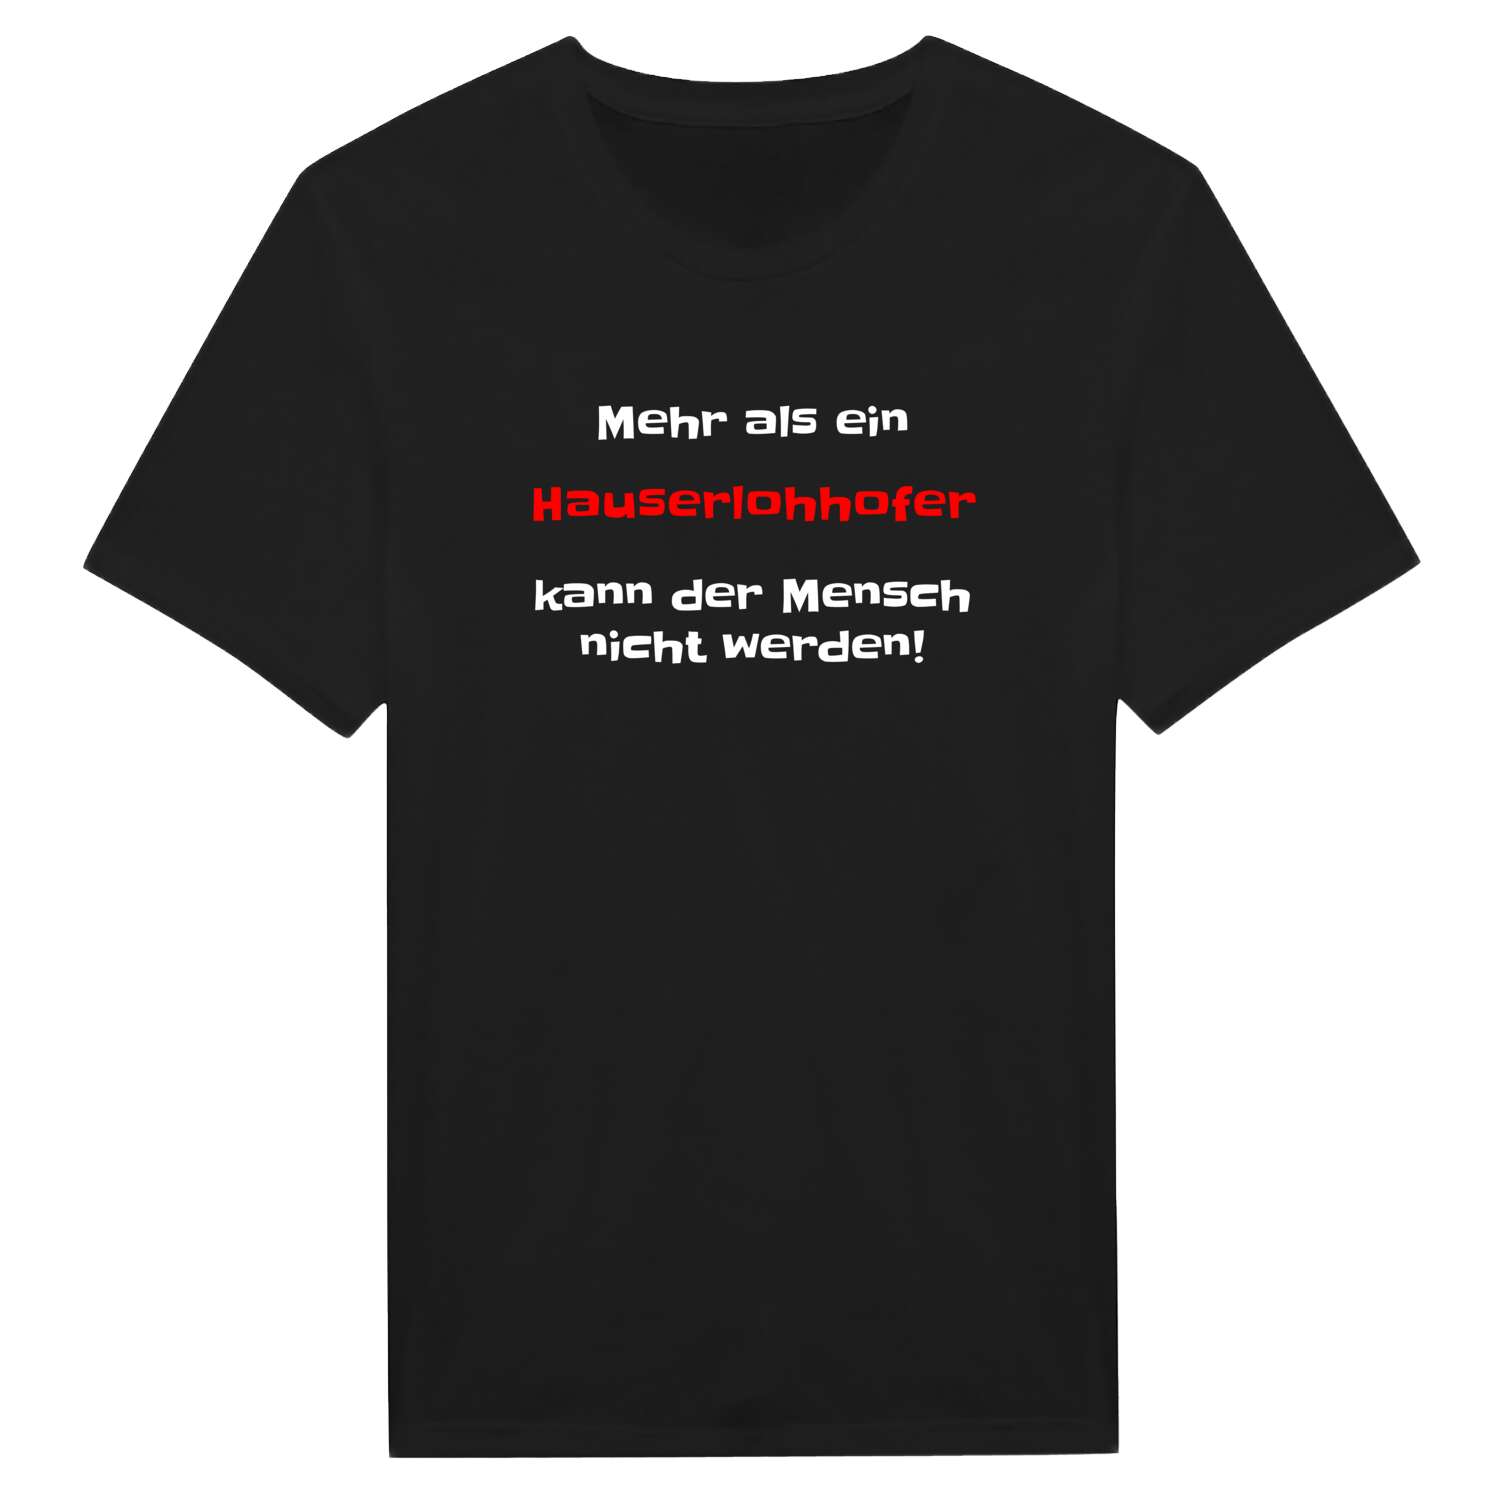 Hauserlohhof T-Shirt »Mehr als ein«